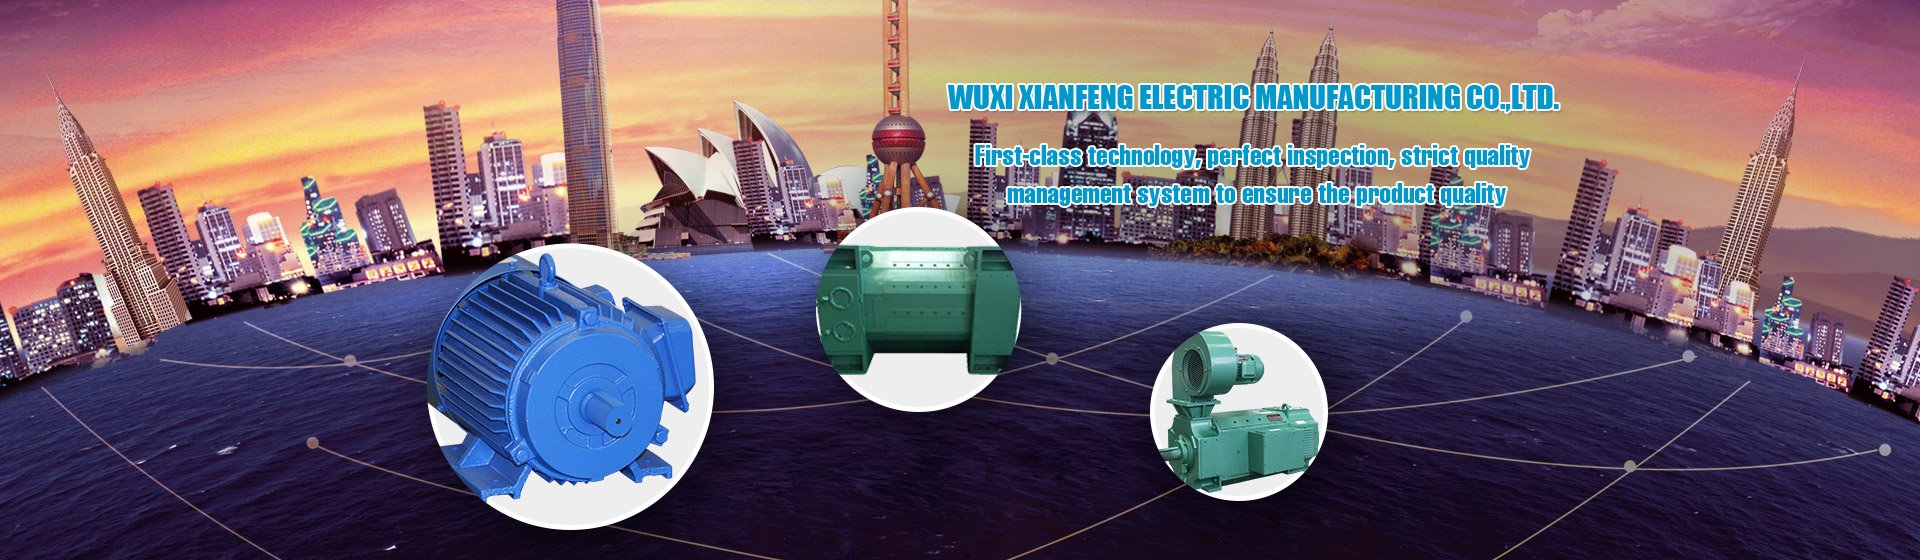 Wuxi Xianfeng Electric Manufacturing Co.,Ltd.